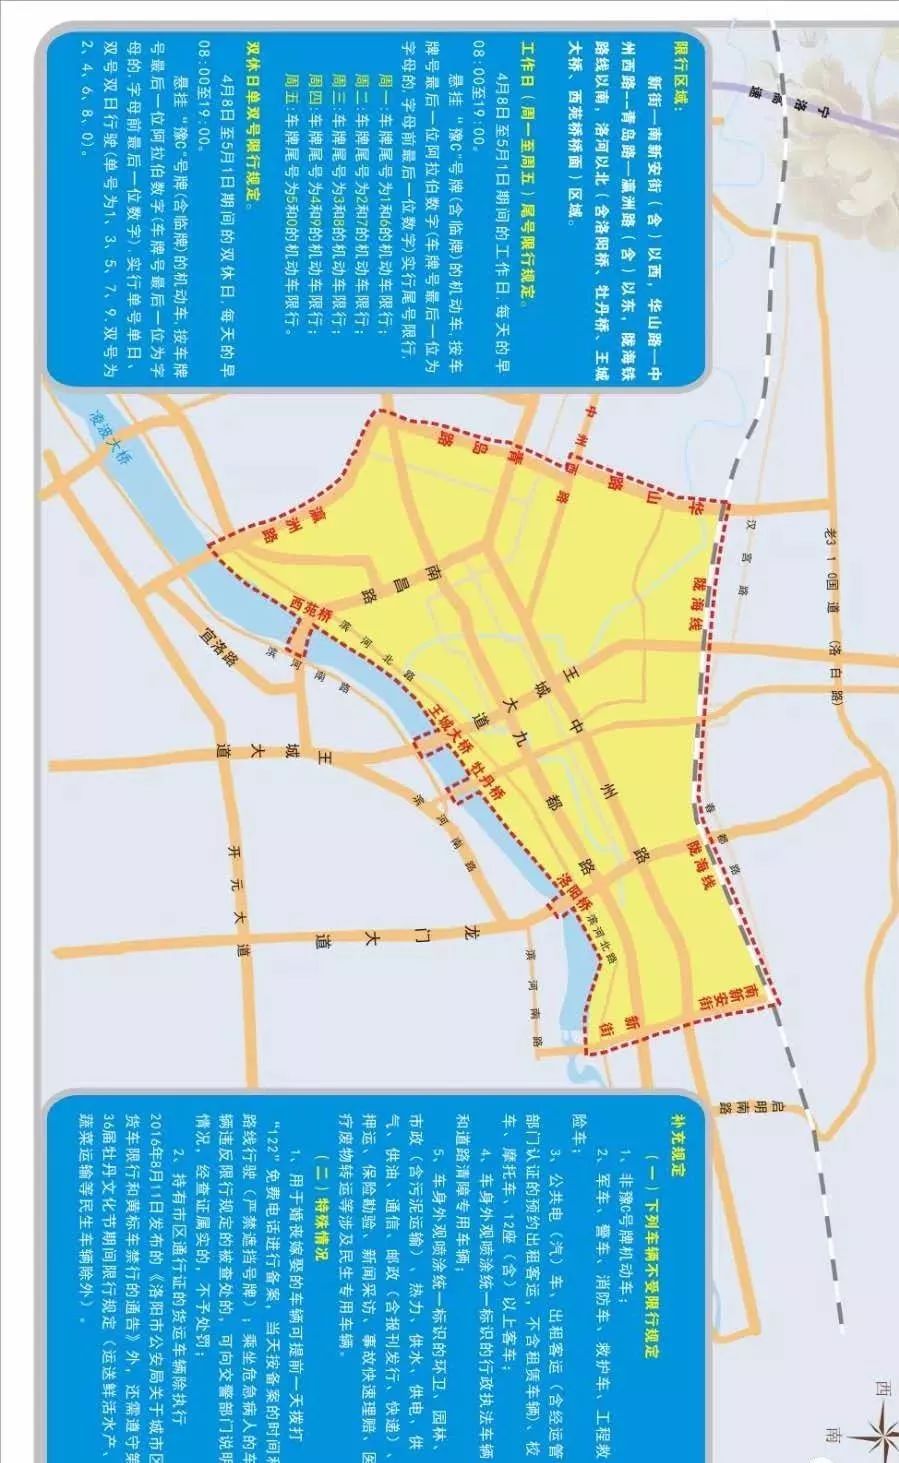 濮阳限行区域地图路段图片